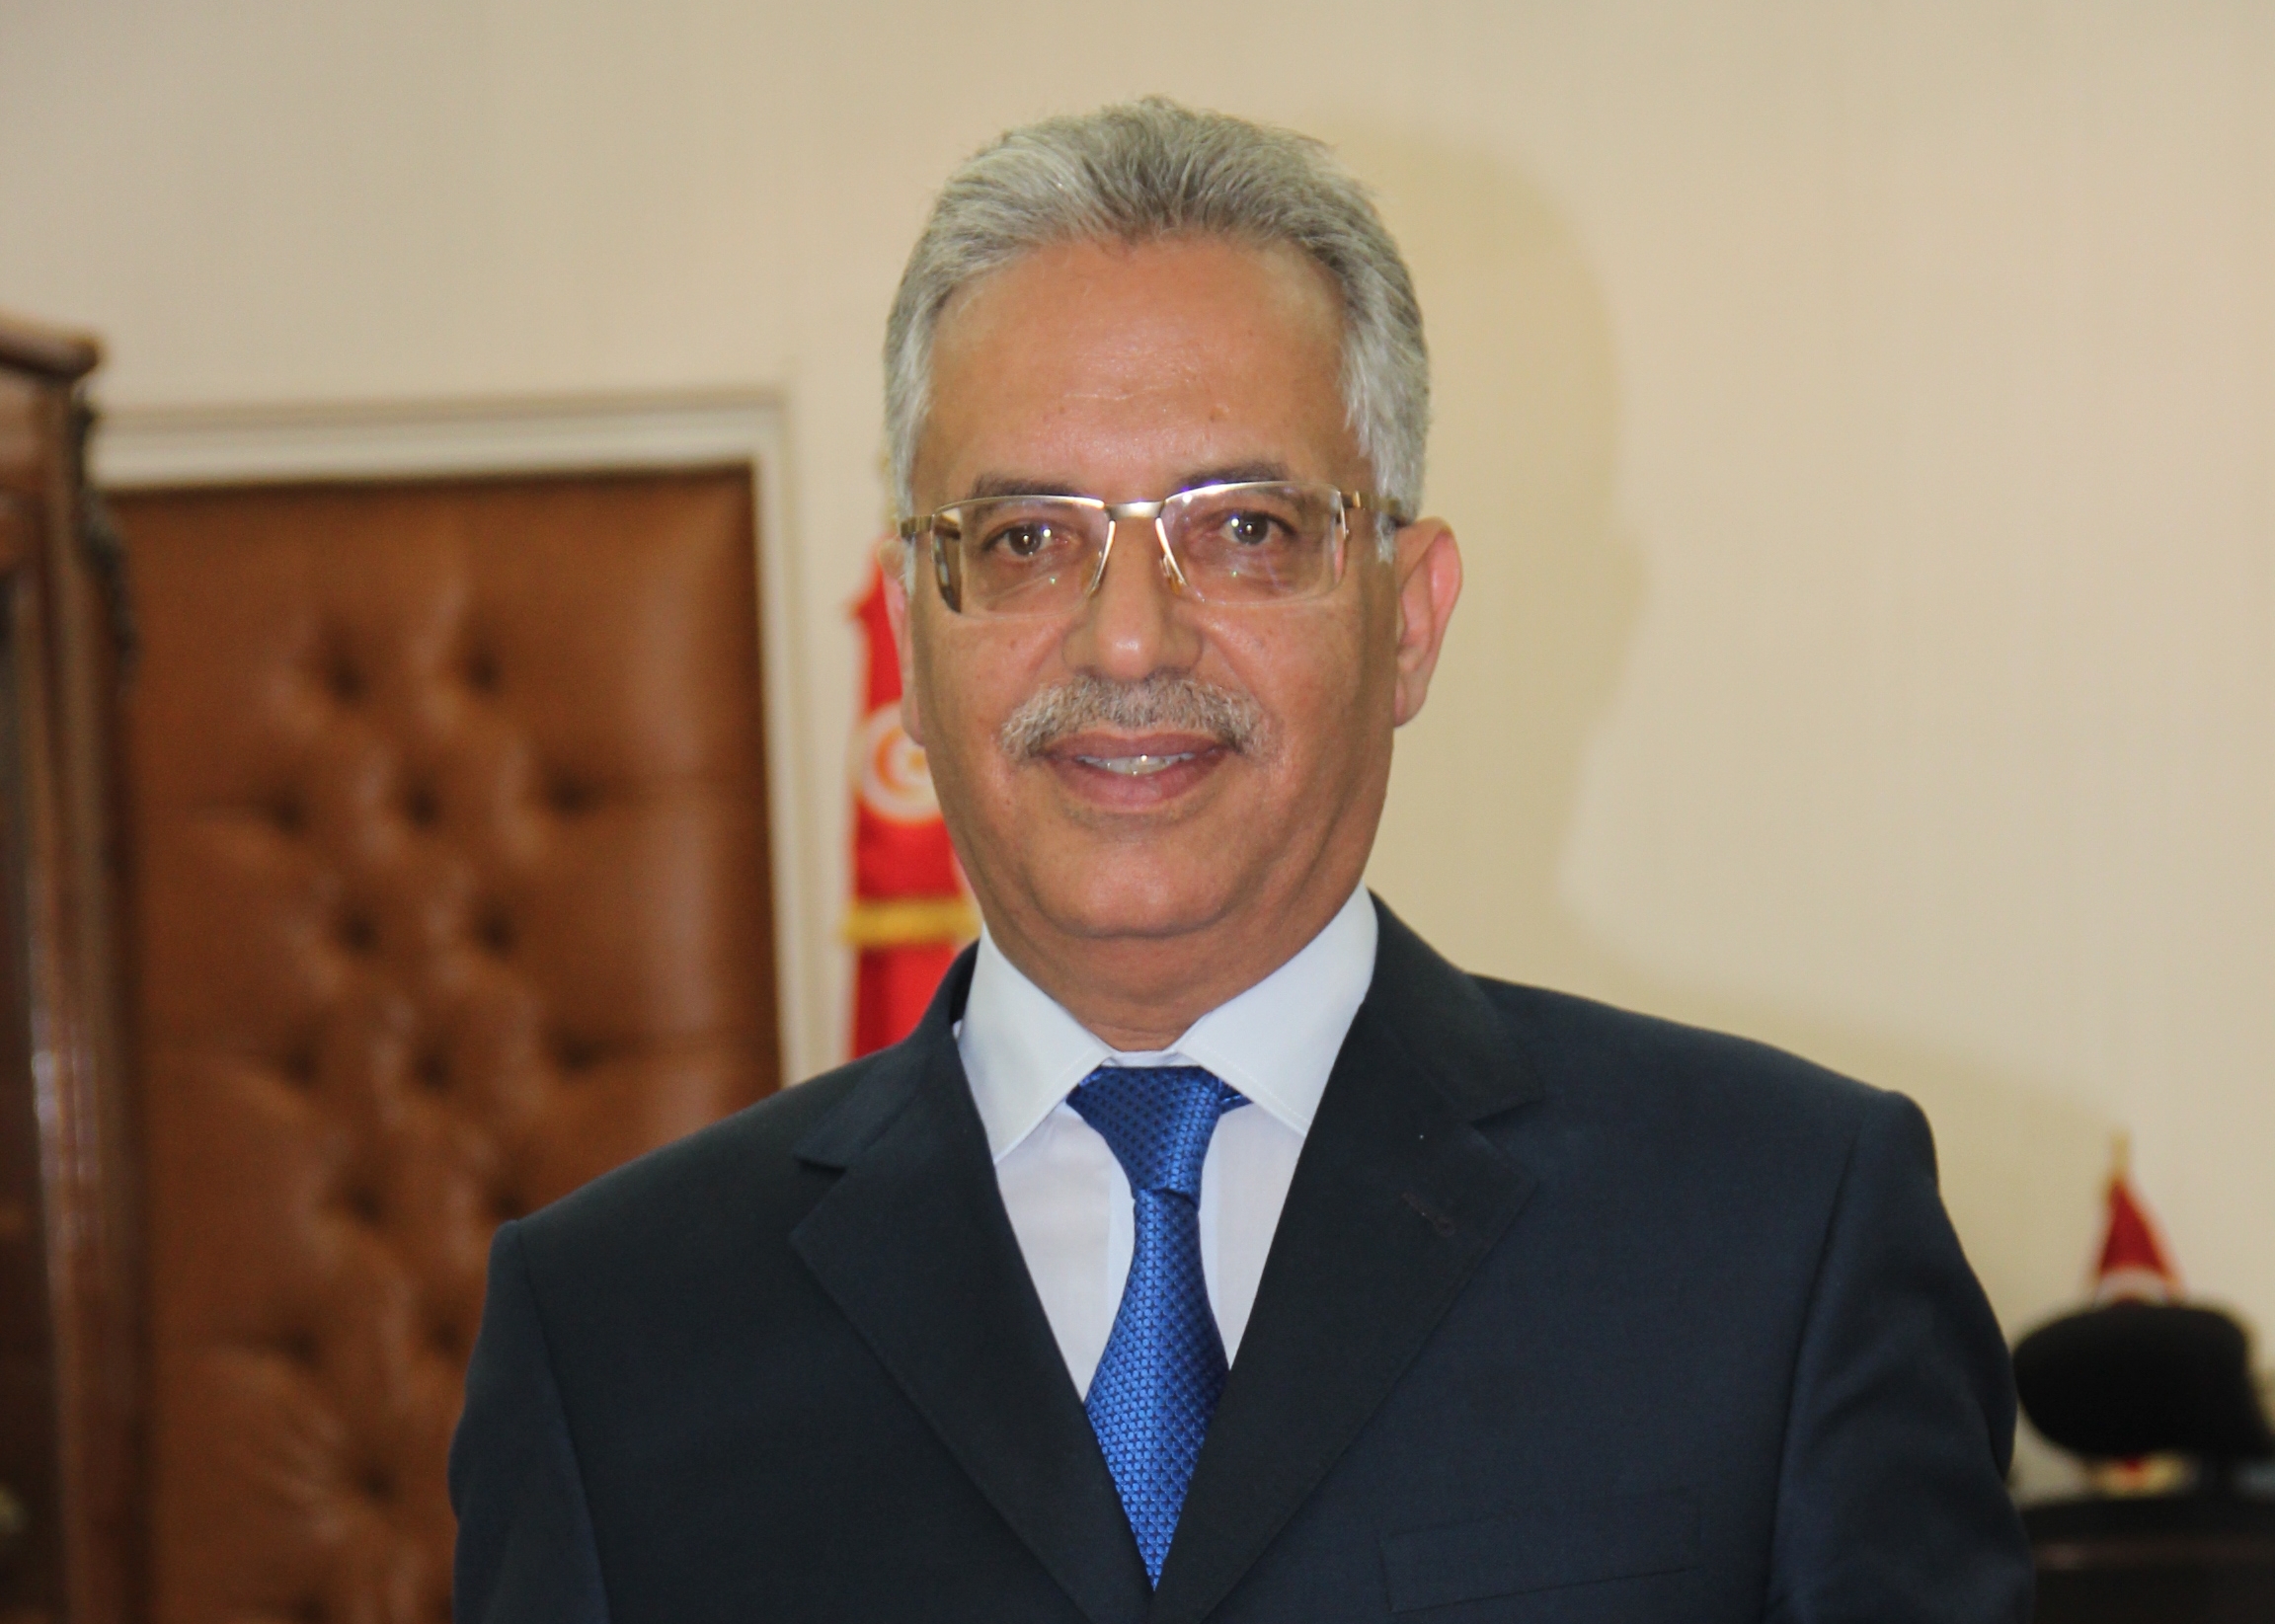 خاص: عمر منصور الأقرب ليكون مدير ديوان القصر الرئاسي